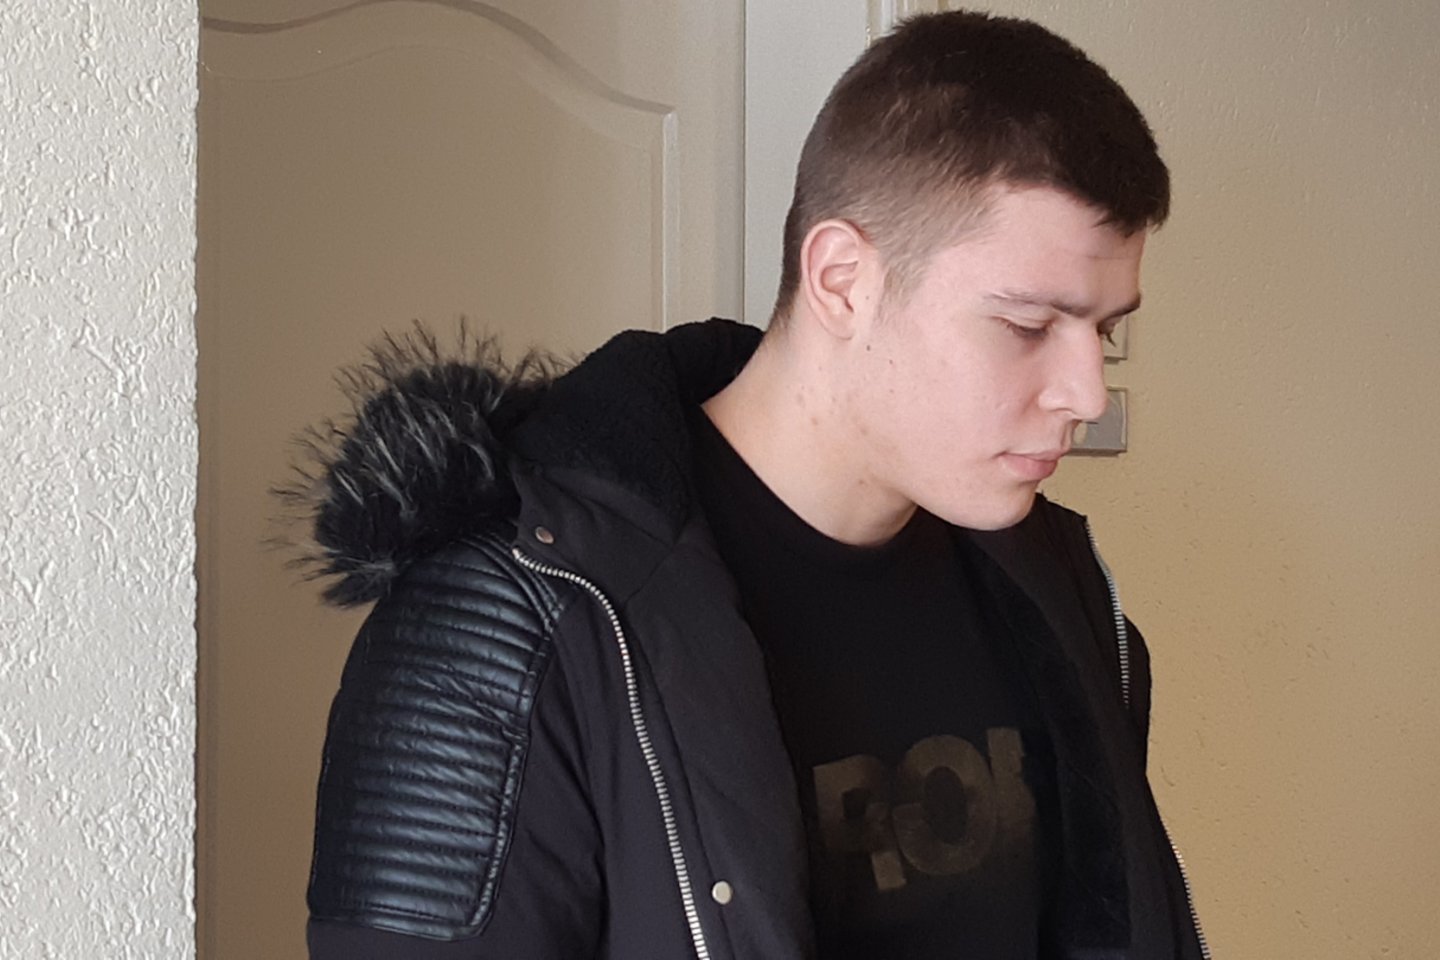  16-metę išprievartavusiam ir itin žiauriai sumušusiam jurbarkiečiui M. Icikevičiui penktadienį paskelbtas nuosprendis. <br> A.Pilaitienės nuotr. 